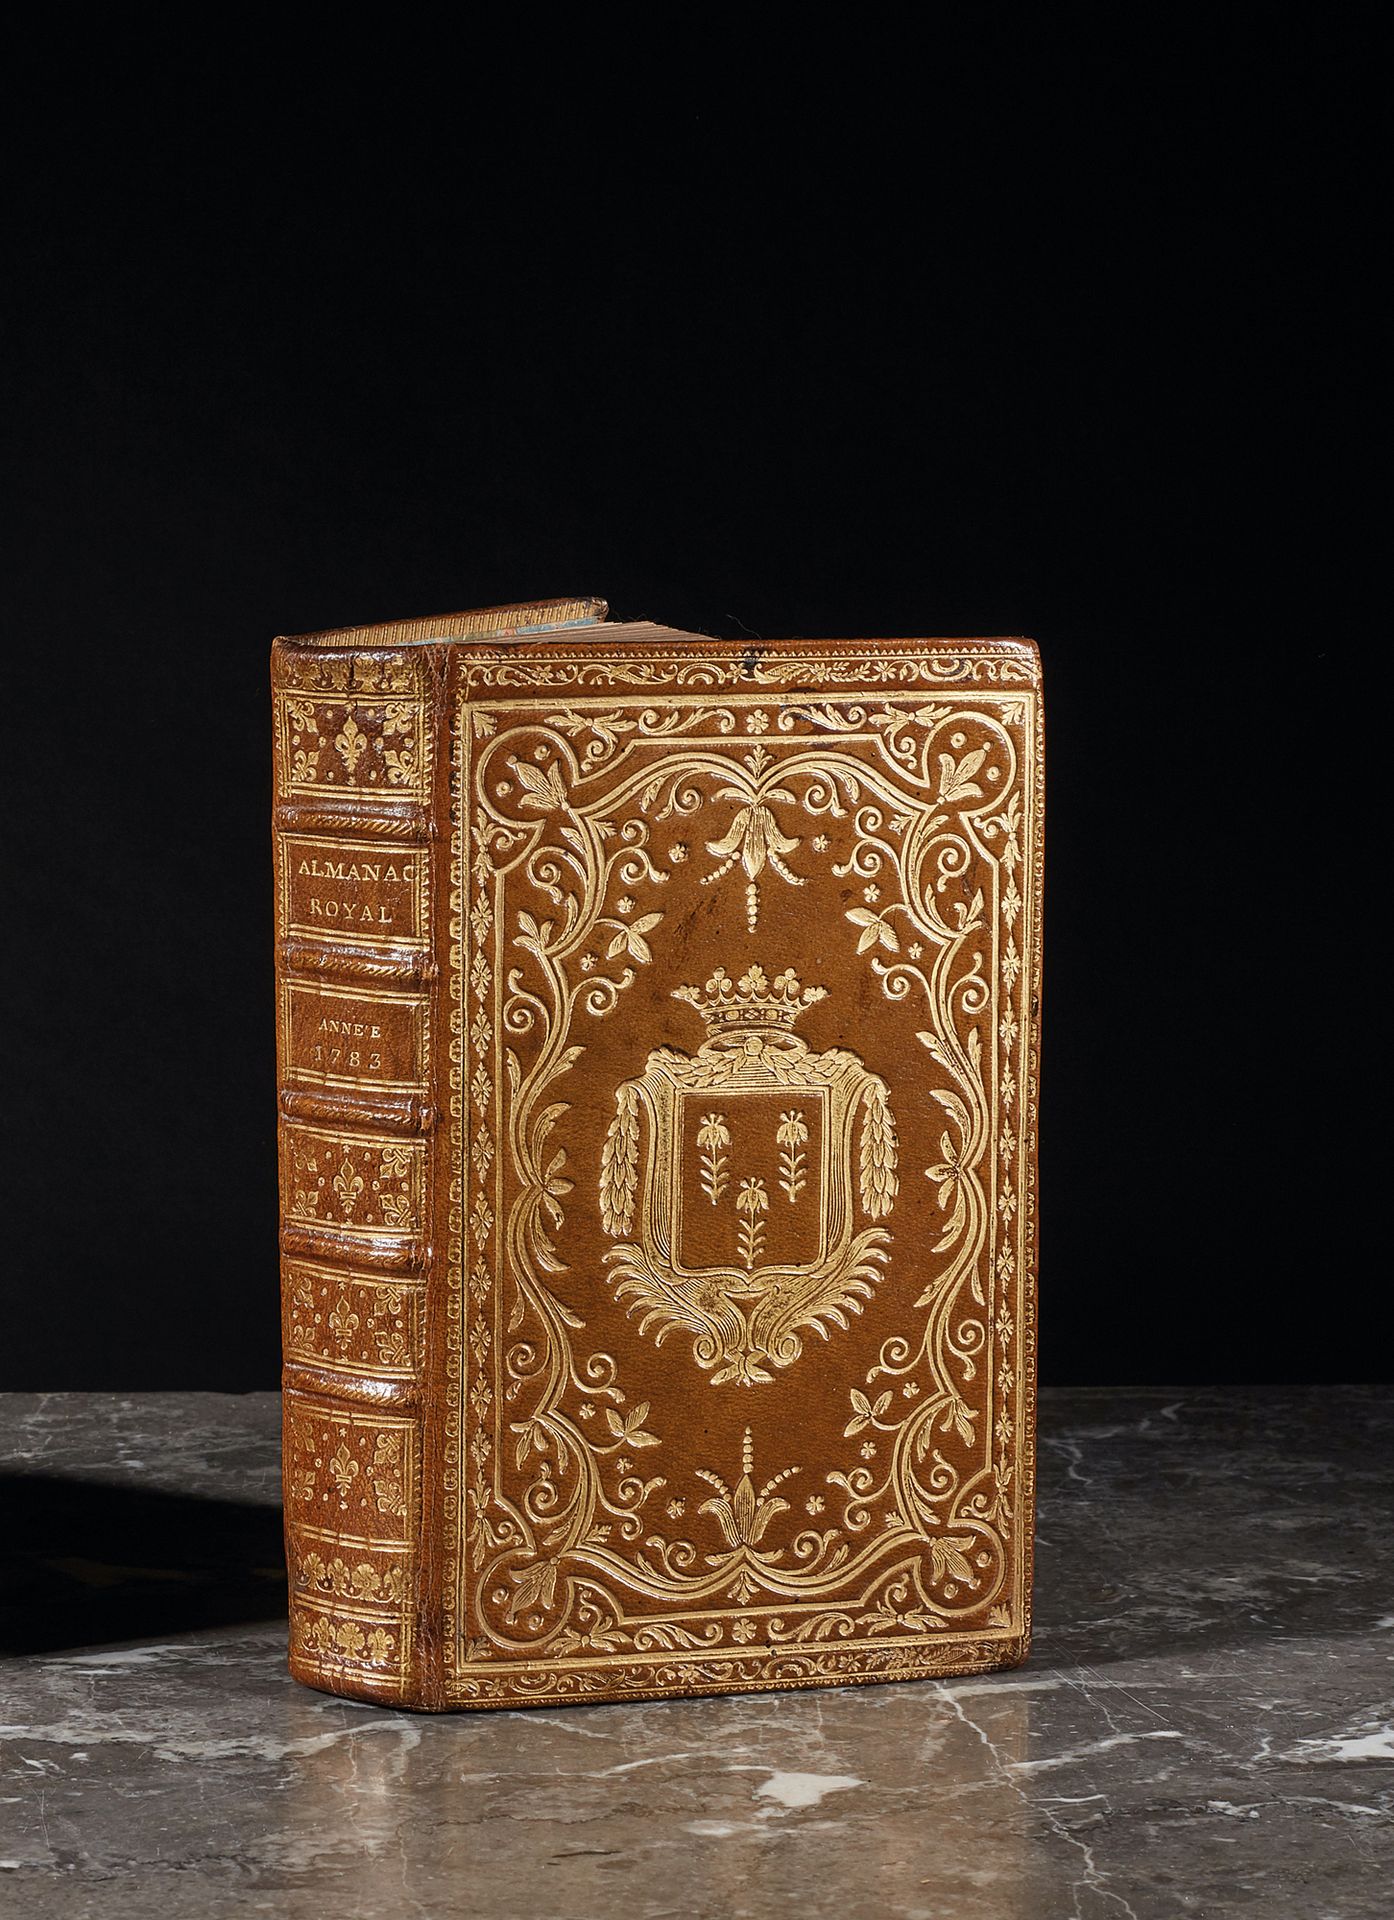 Null [ALMANACH]
Almanach royal pour l'an bissextile MDCCLXXXIII. Paris, chez d'H&hellip;